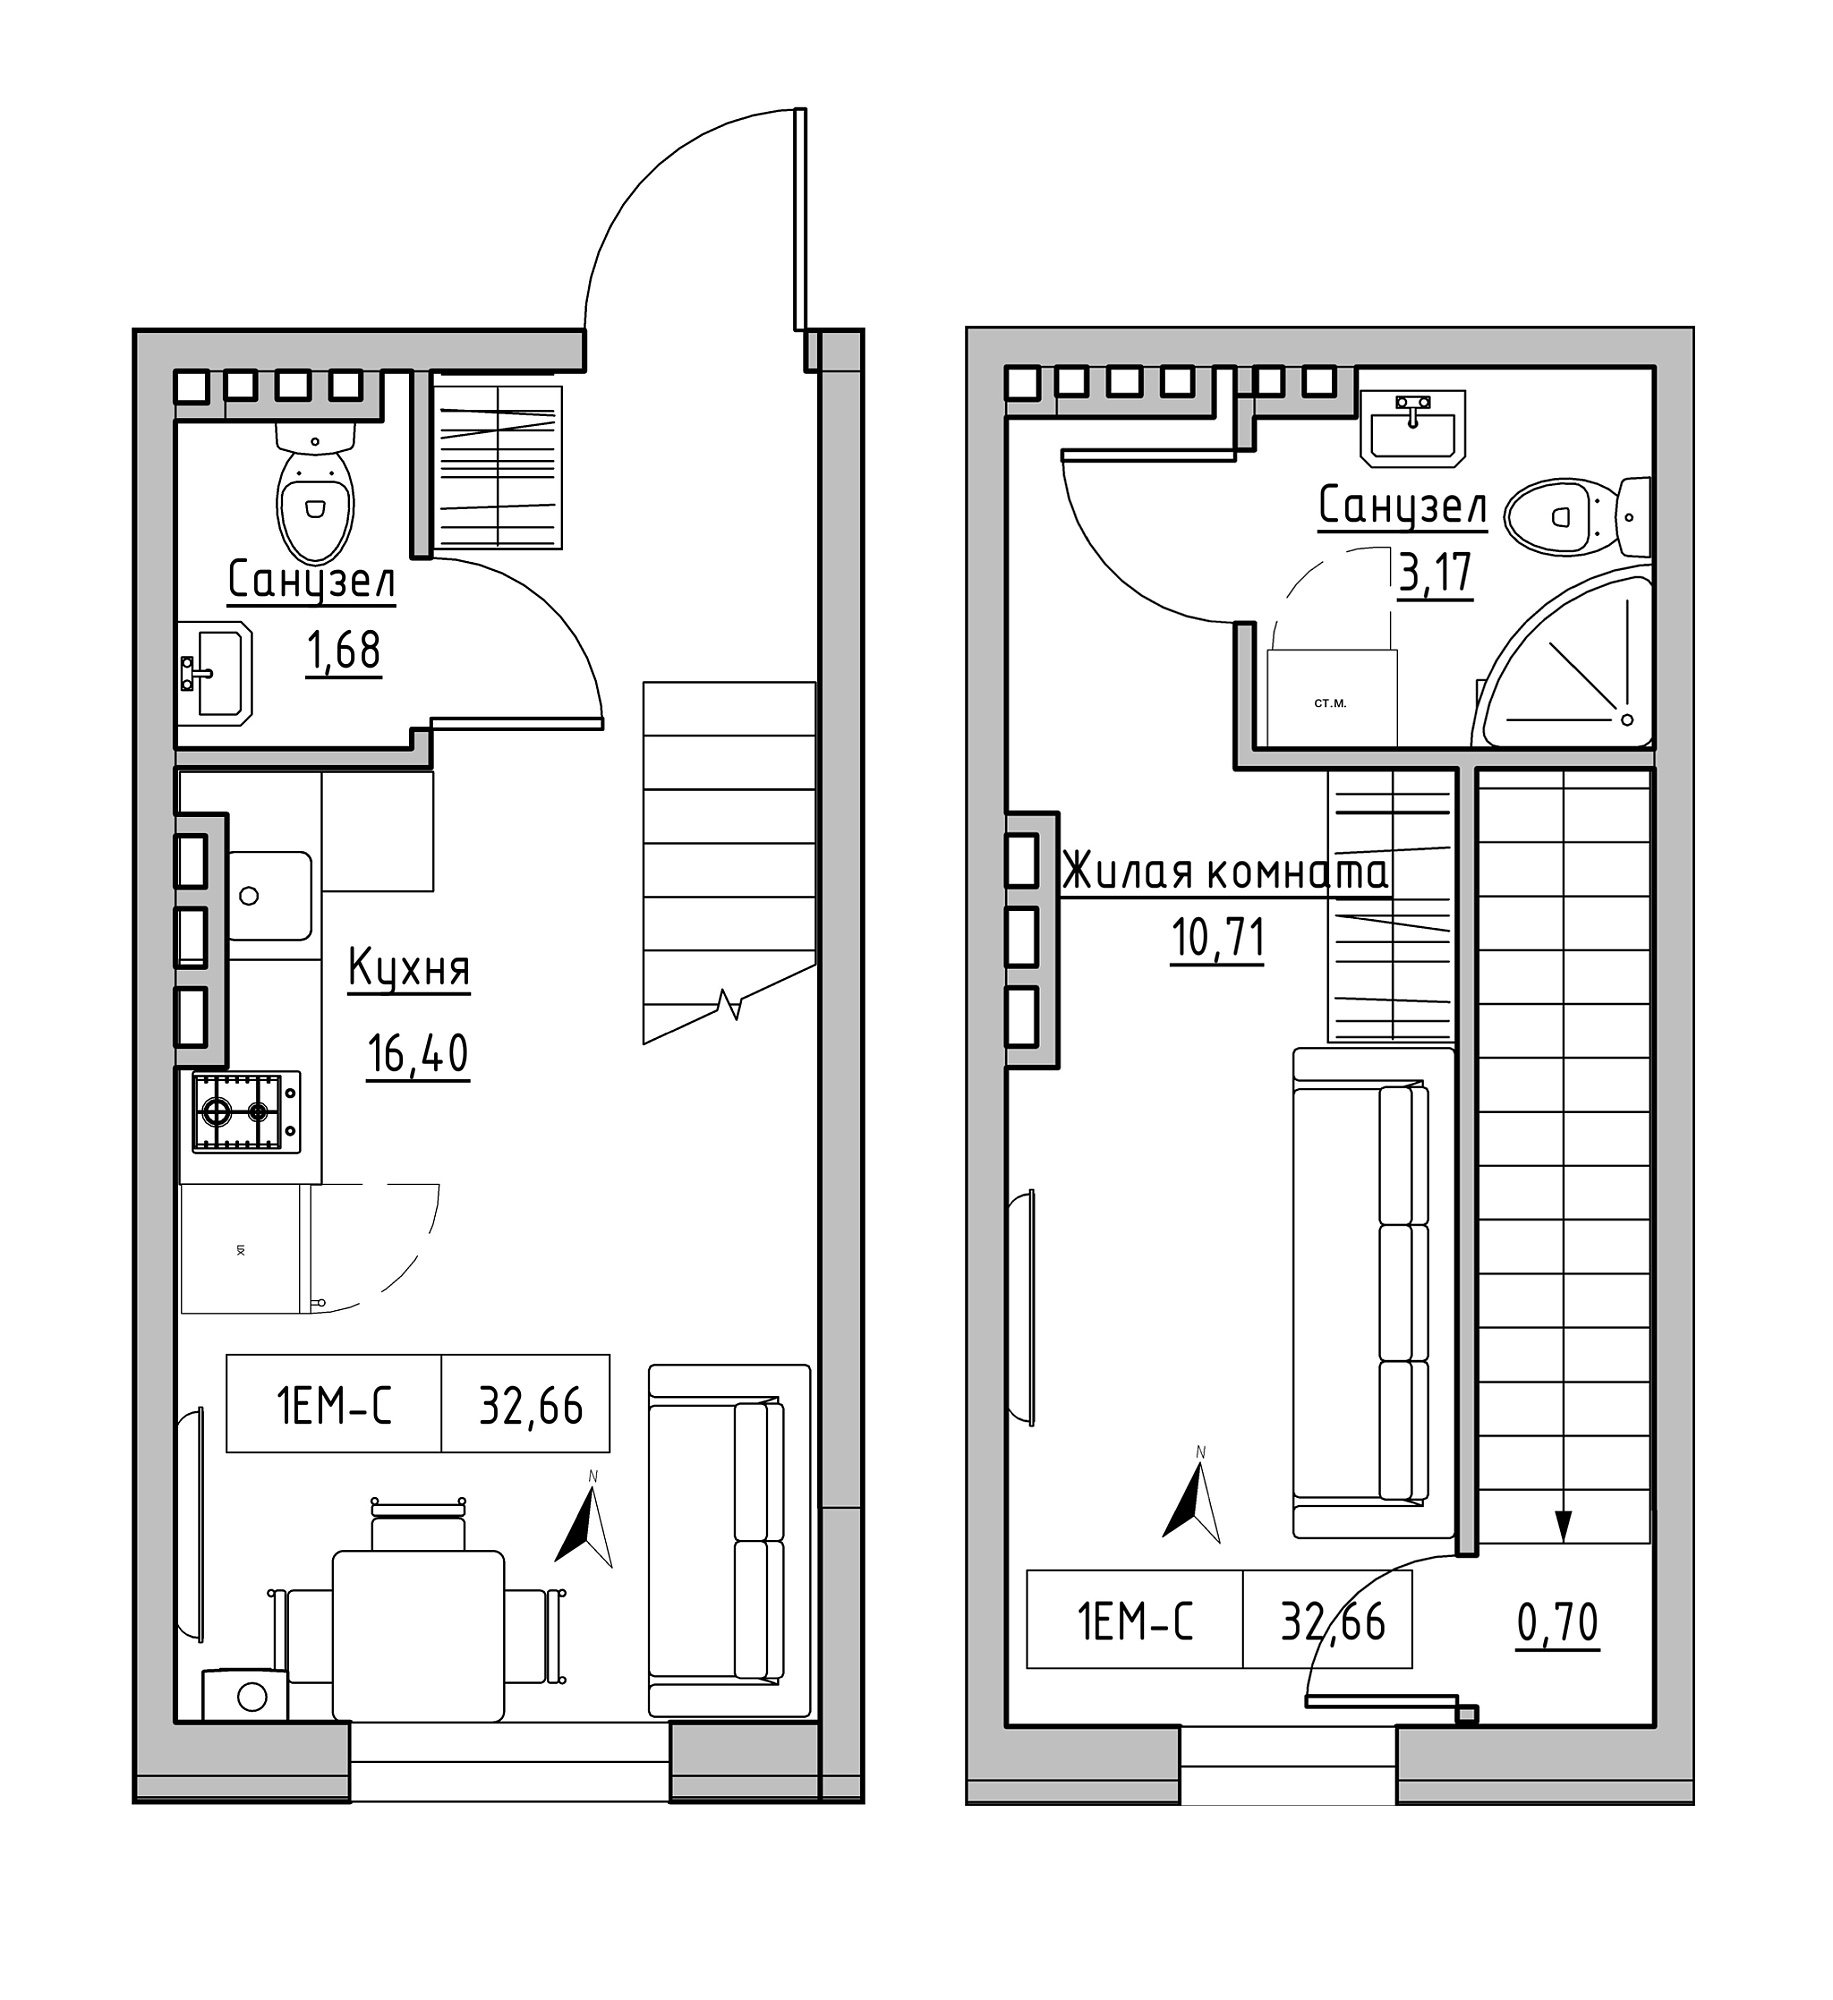 Planning 2-lvl flats area 32.66m2, KS-024-03/0006.